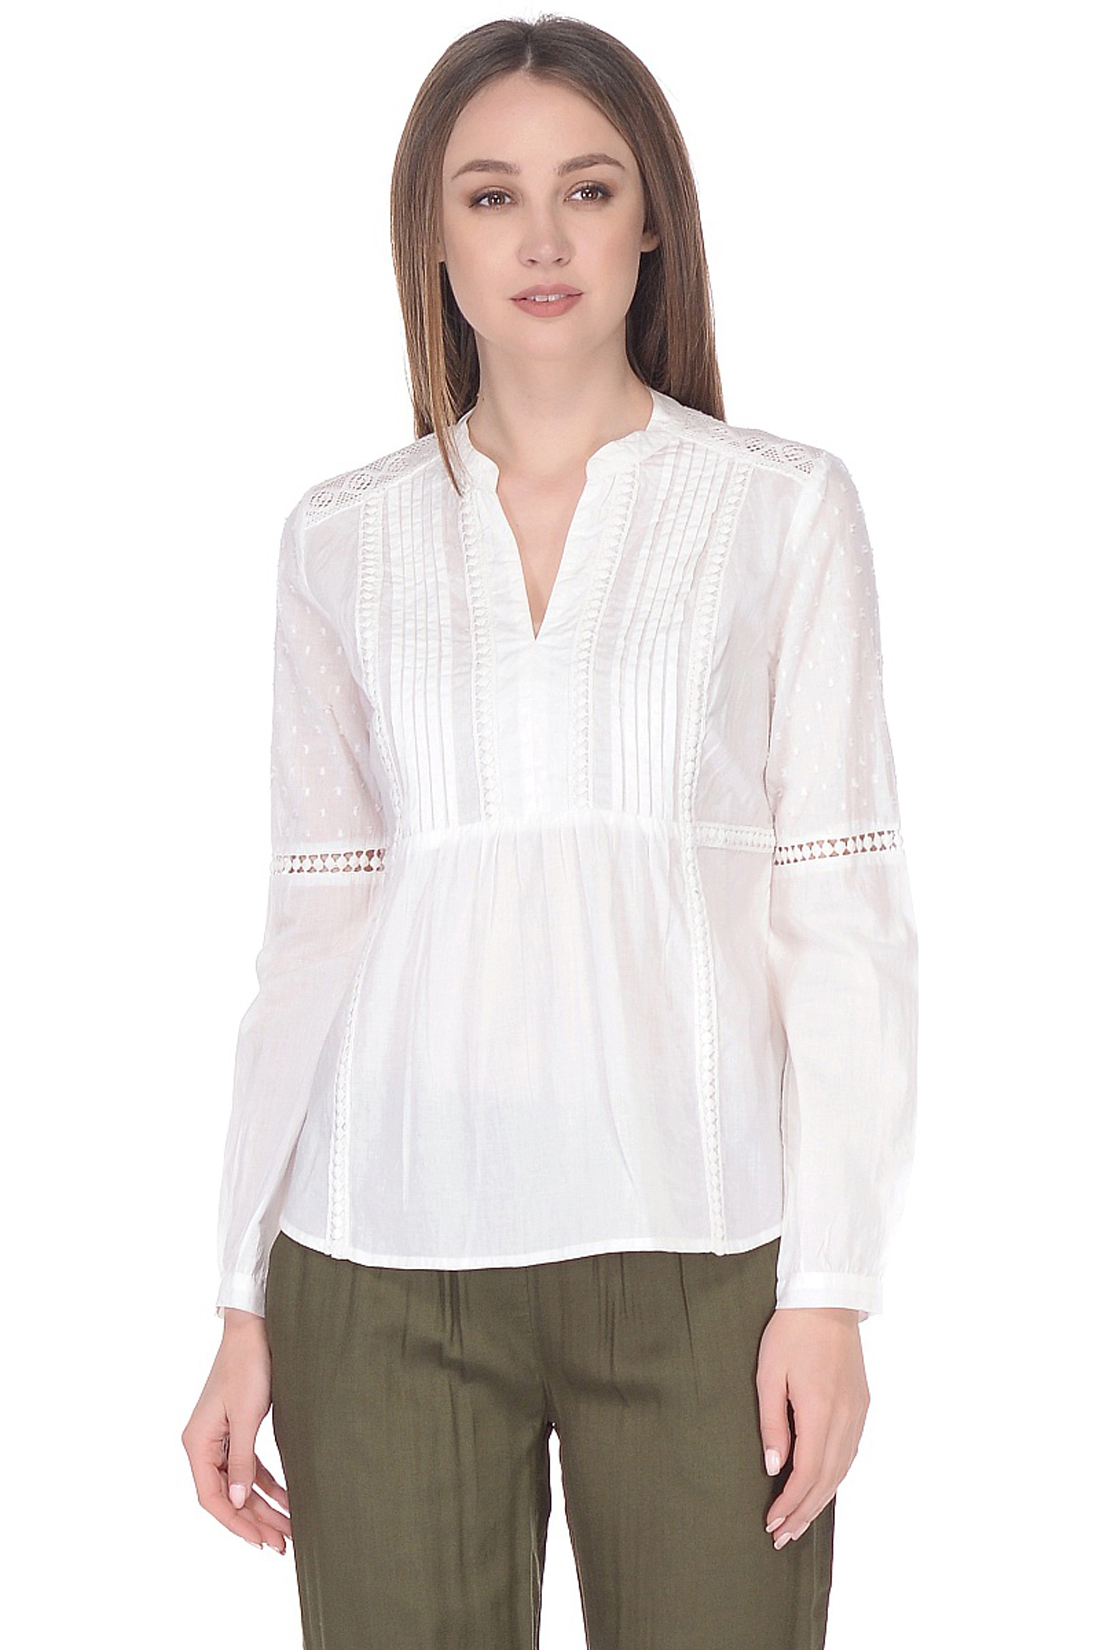 Хлопковая блузка в этническом стиле (арт. baon B178064), размер L, цвет белый Хлопковая блузка в этническом стиле (арт. baon B178064) - фото 1